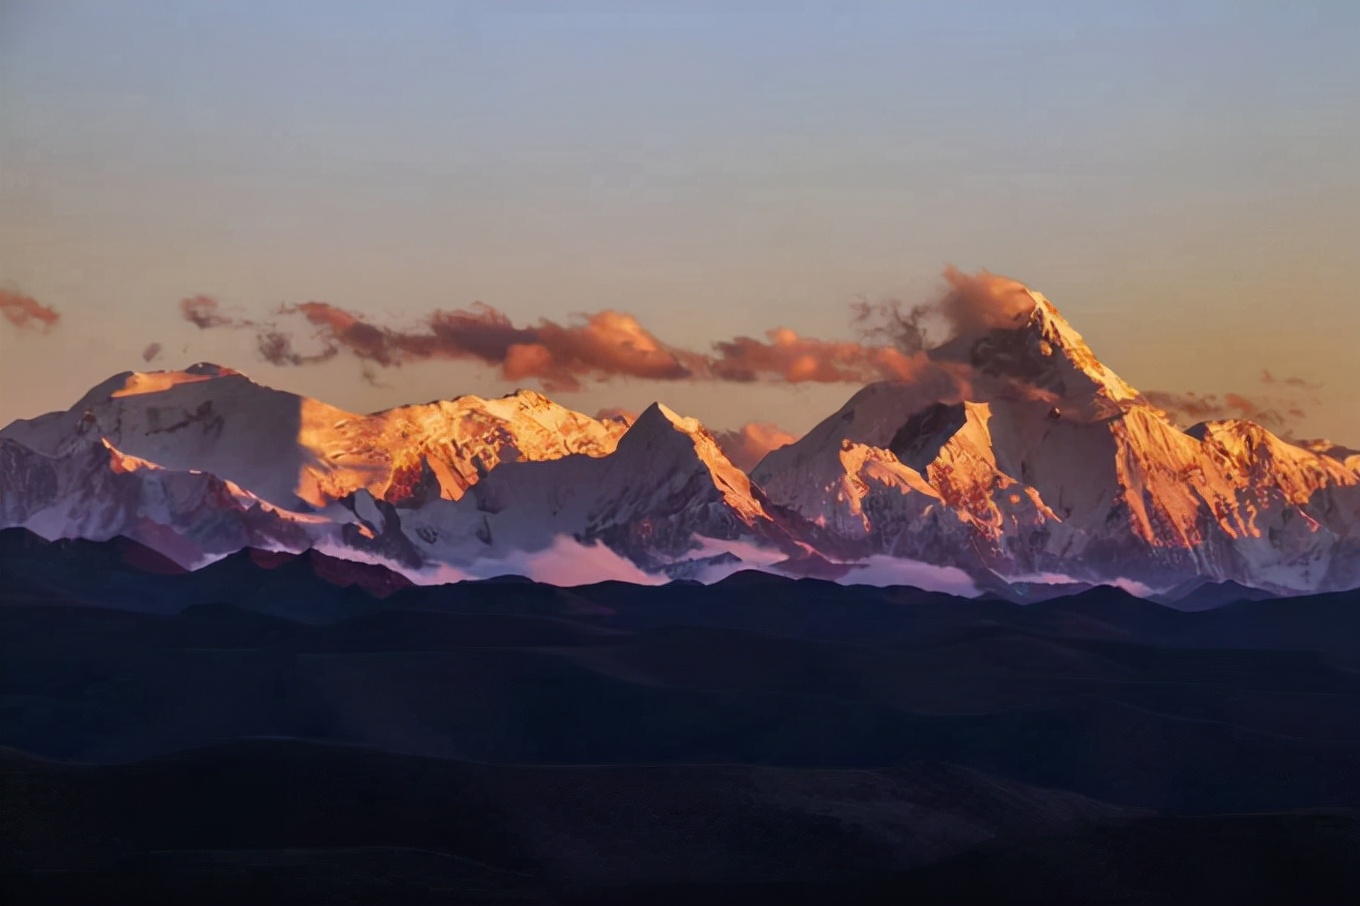 贡嘎雪山，屹立于众峰之巅，气势磅礴，高大险峻，被誉为蜀山之王